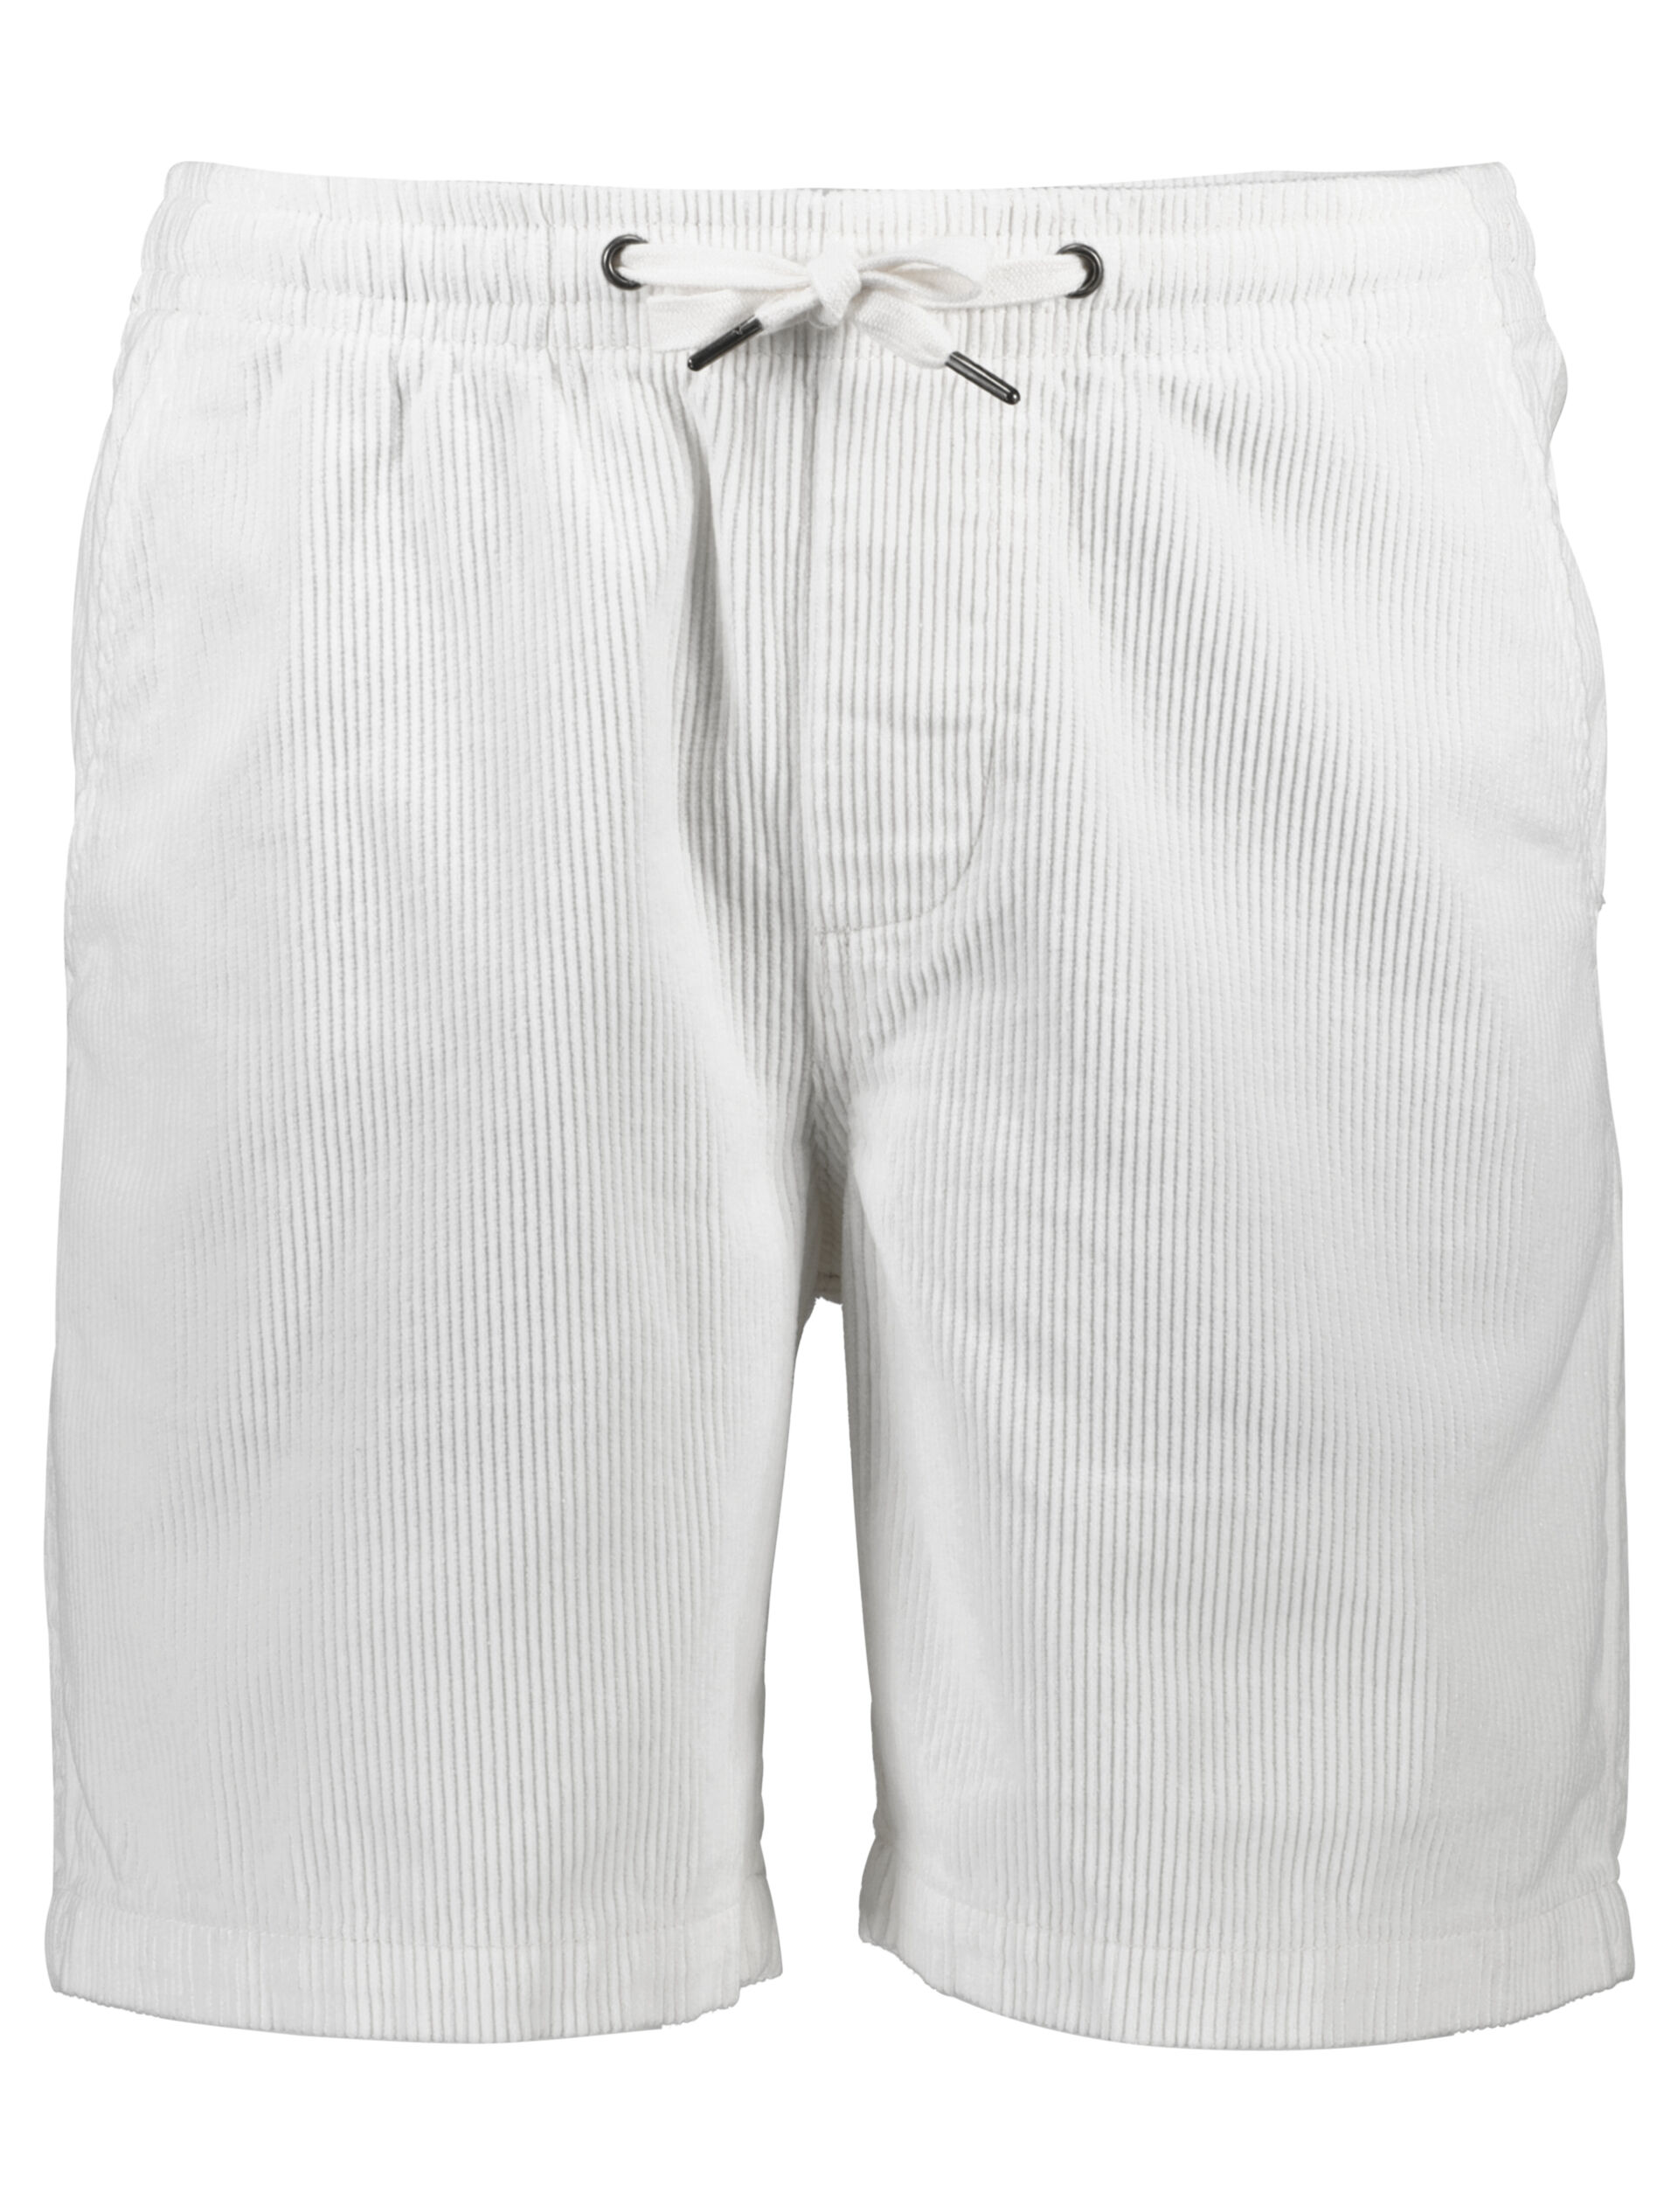 Casual shorts Casual shorts Vit 30-505086